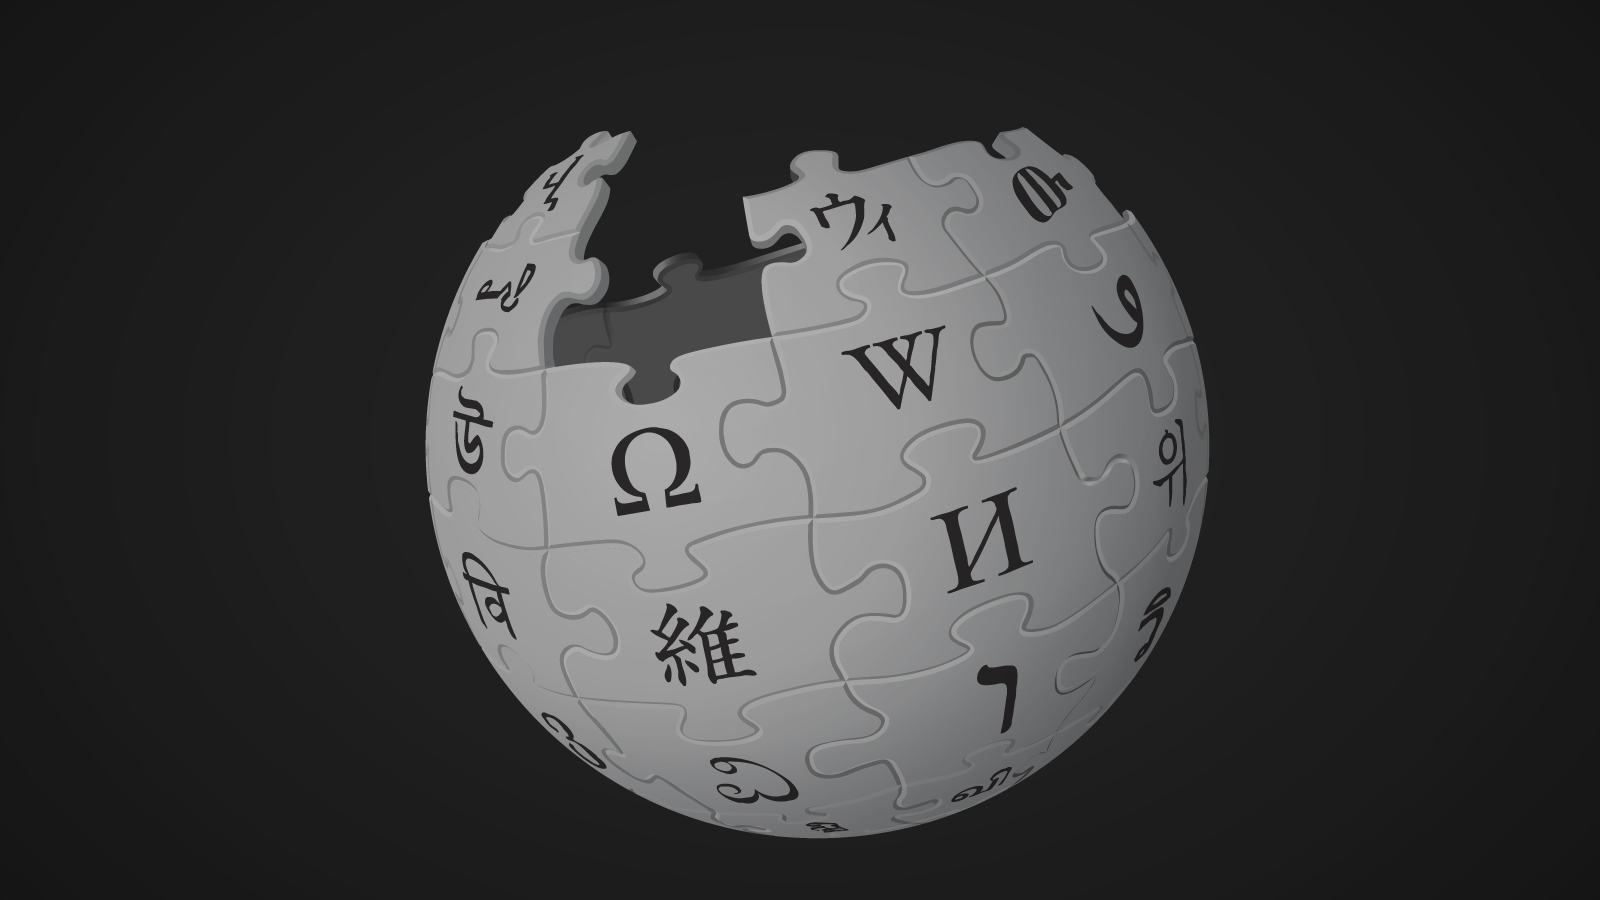 Regiões econômicas da Rússia – Wikipédia, a enciclopédia livre